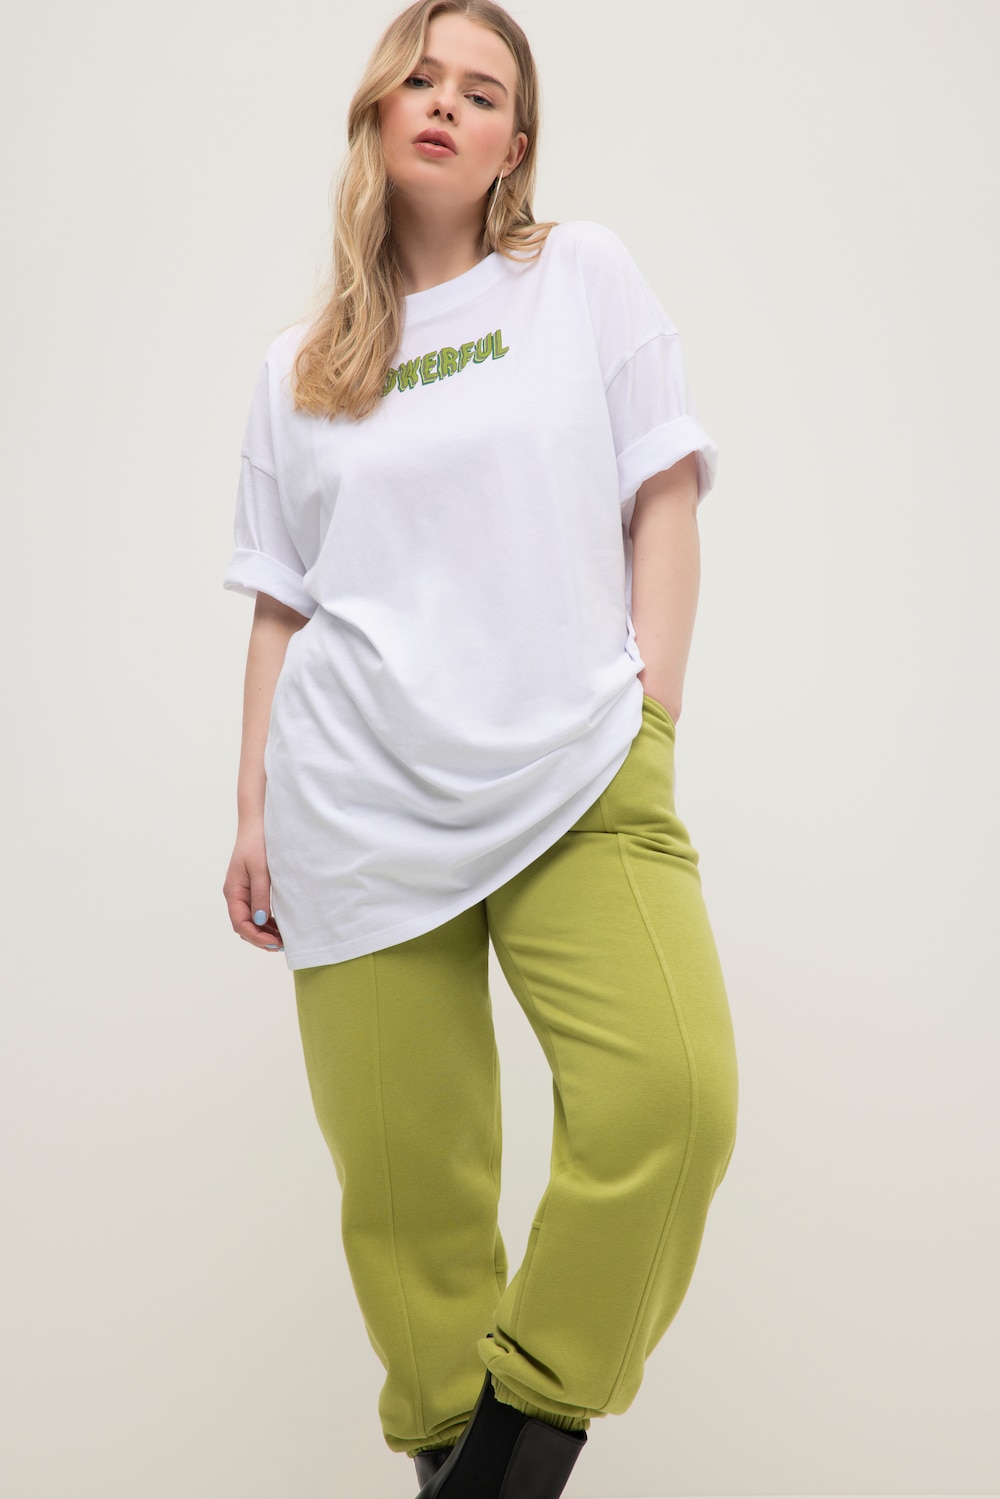 Grosse Grössen T-Shirt, Damen, weiß, Größe: 46/48, Baumwolle, Studio Untold